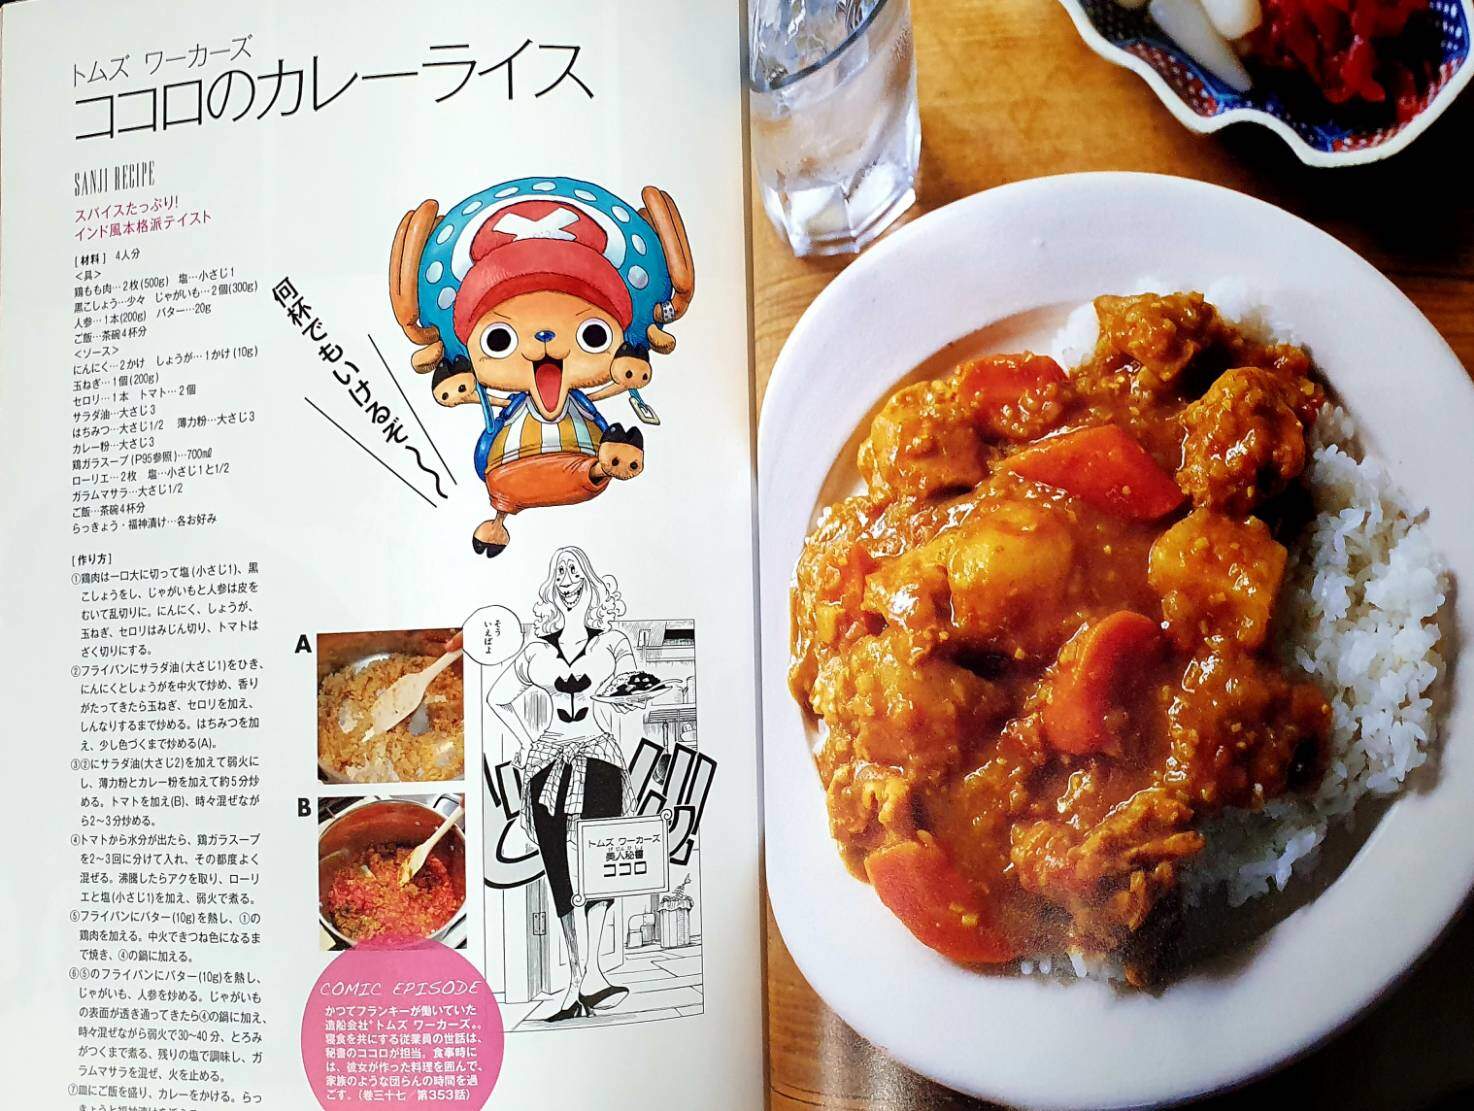 Versão Original Em Inglês Menu Cozinha, One Piece, Receita Menu Pirata,  Sanji Gourmet, Guia de Culinária